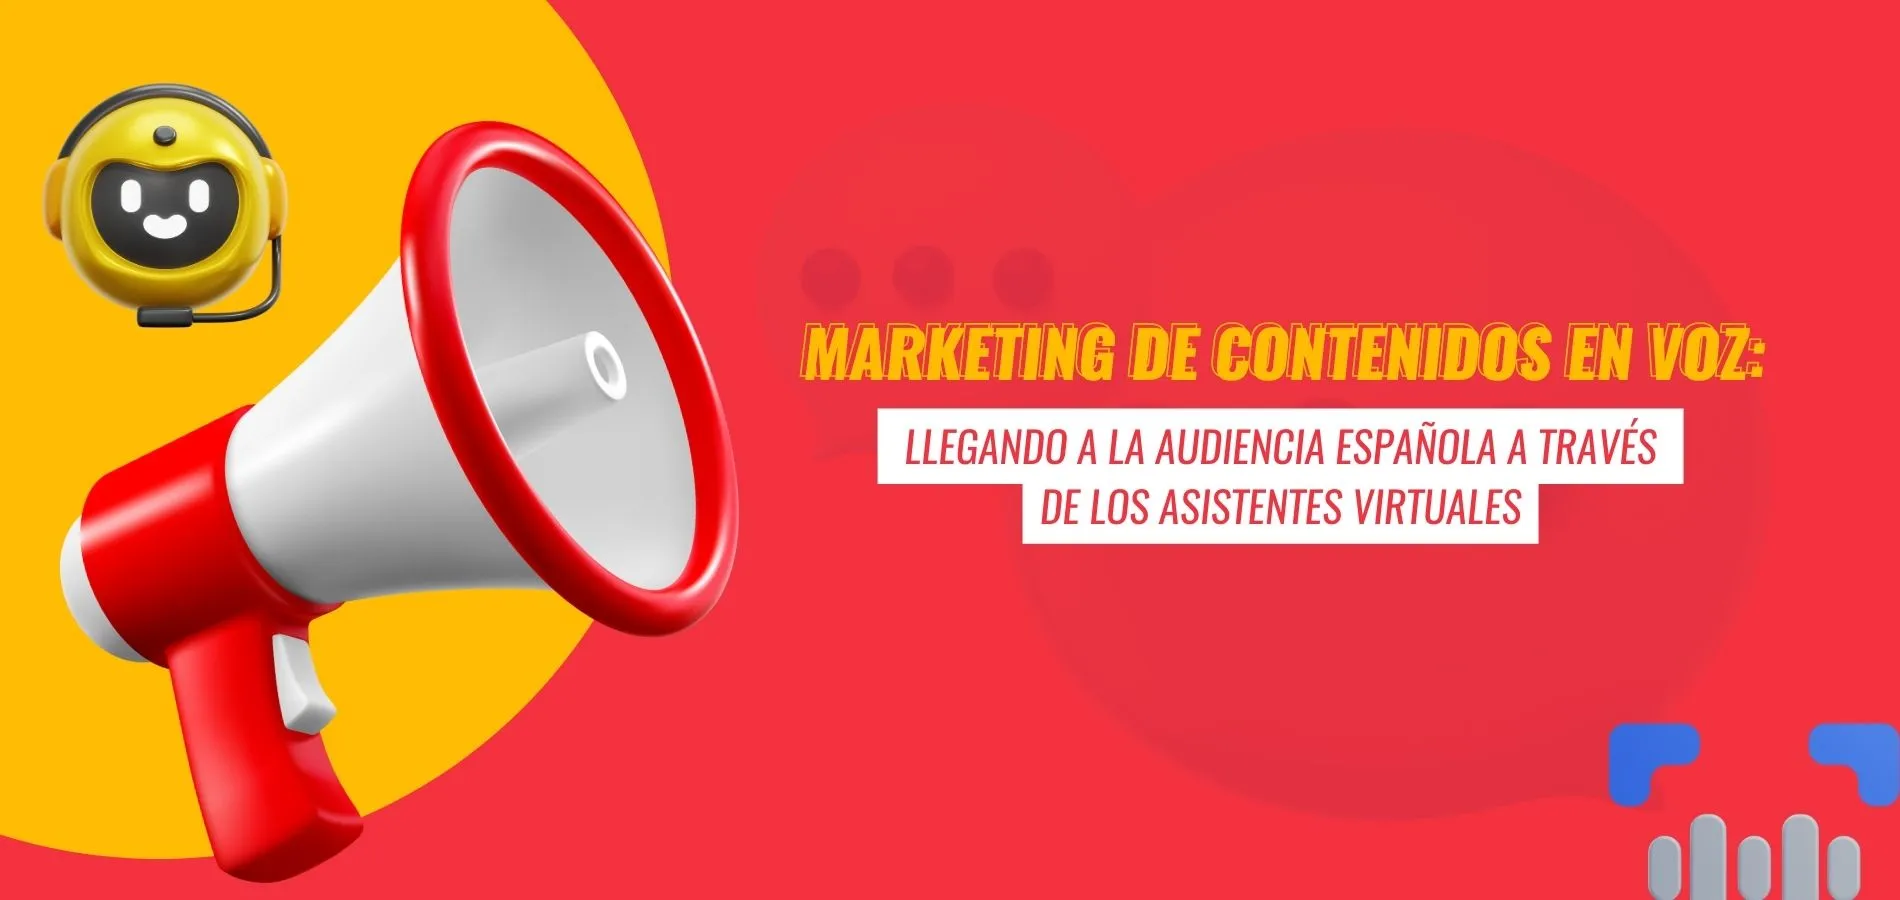 Marketing de contenidos en voz: Llegando a la audiencia española a través de los asistentes virtuales